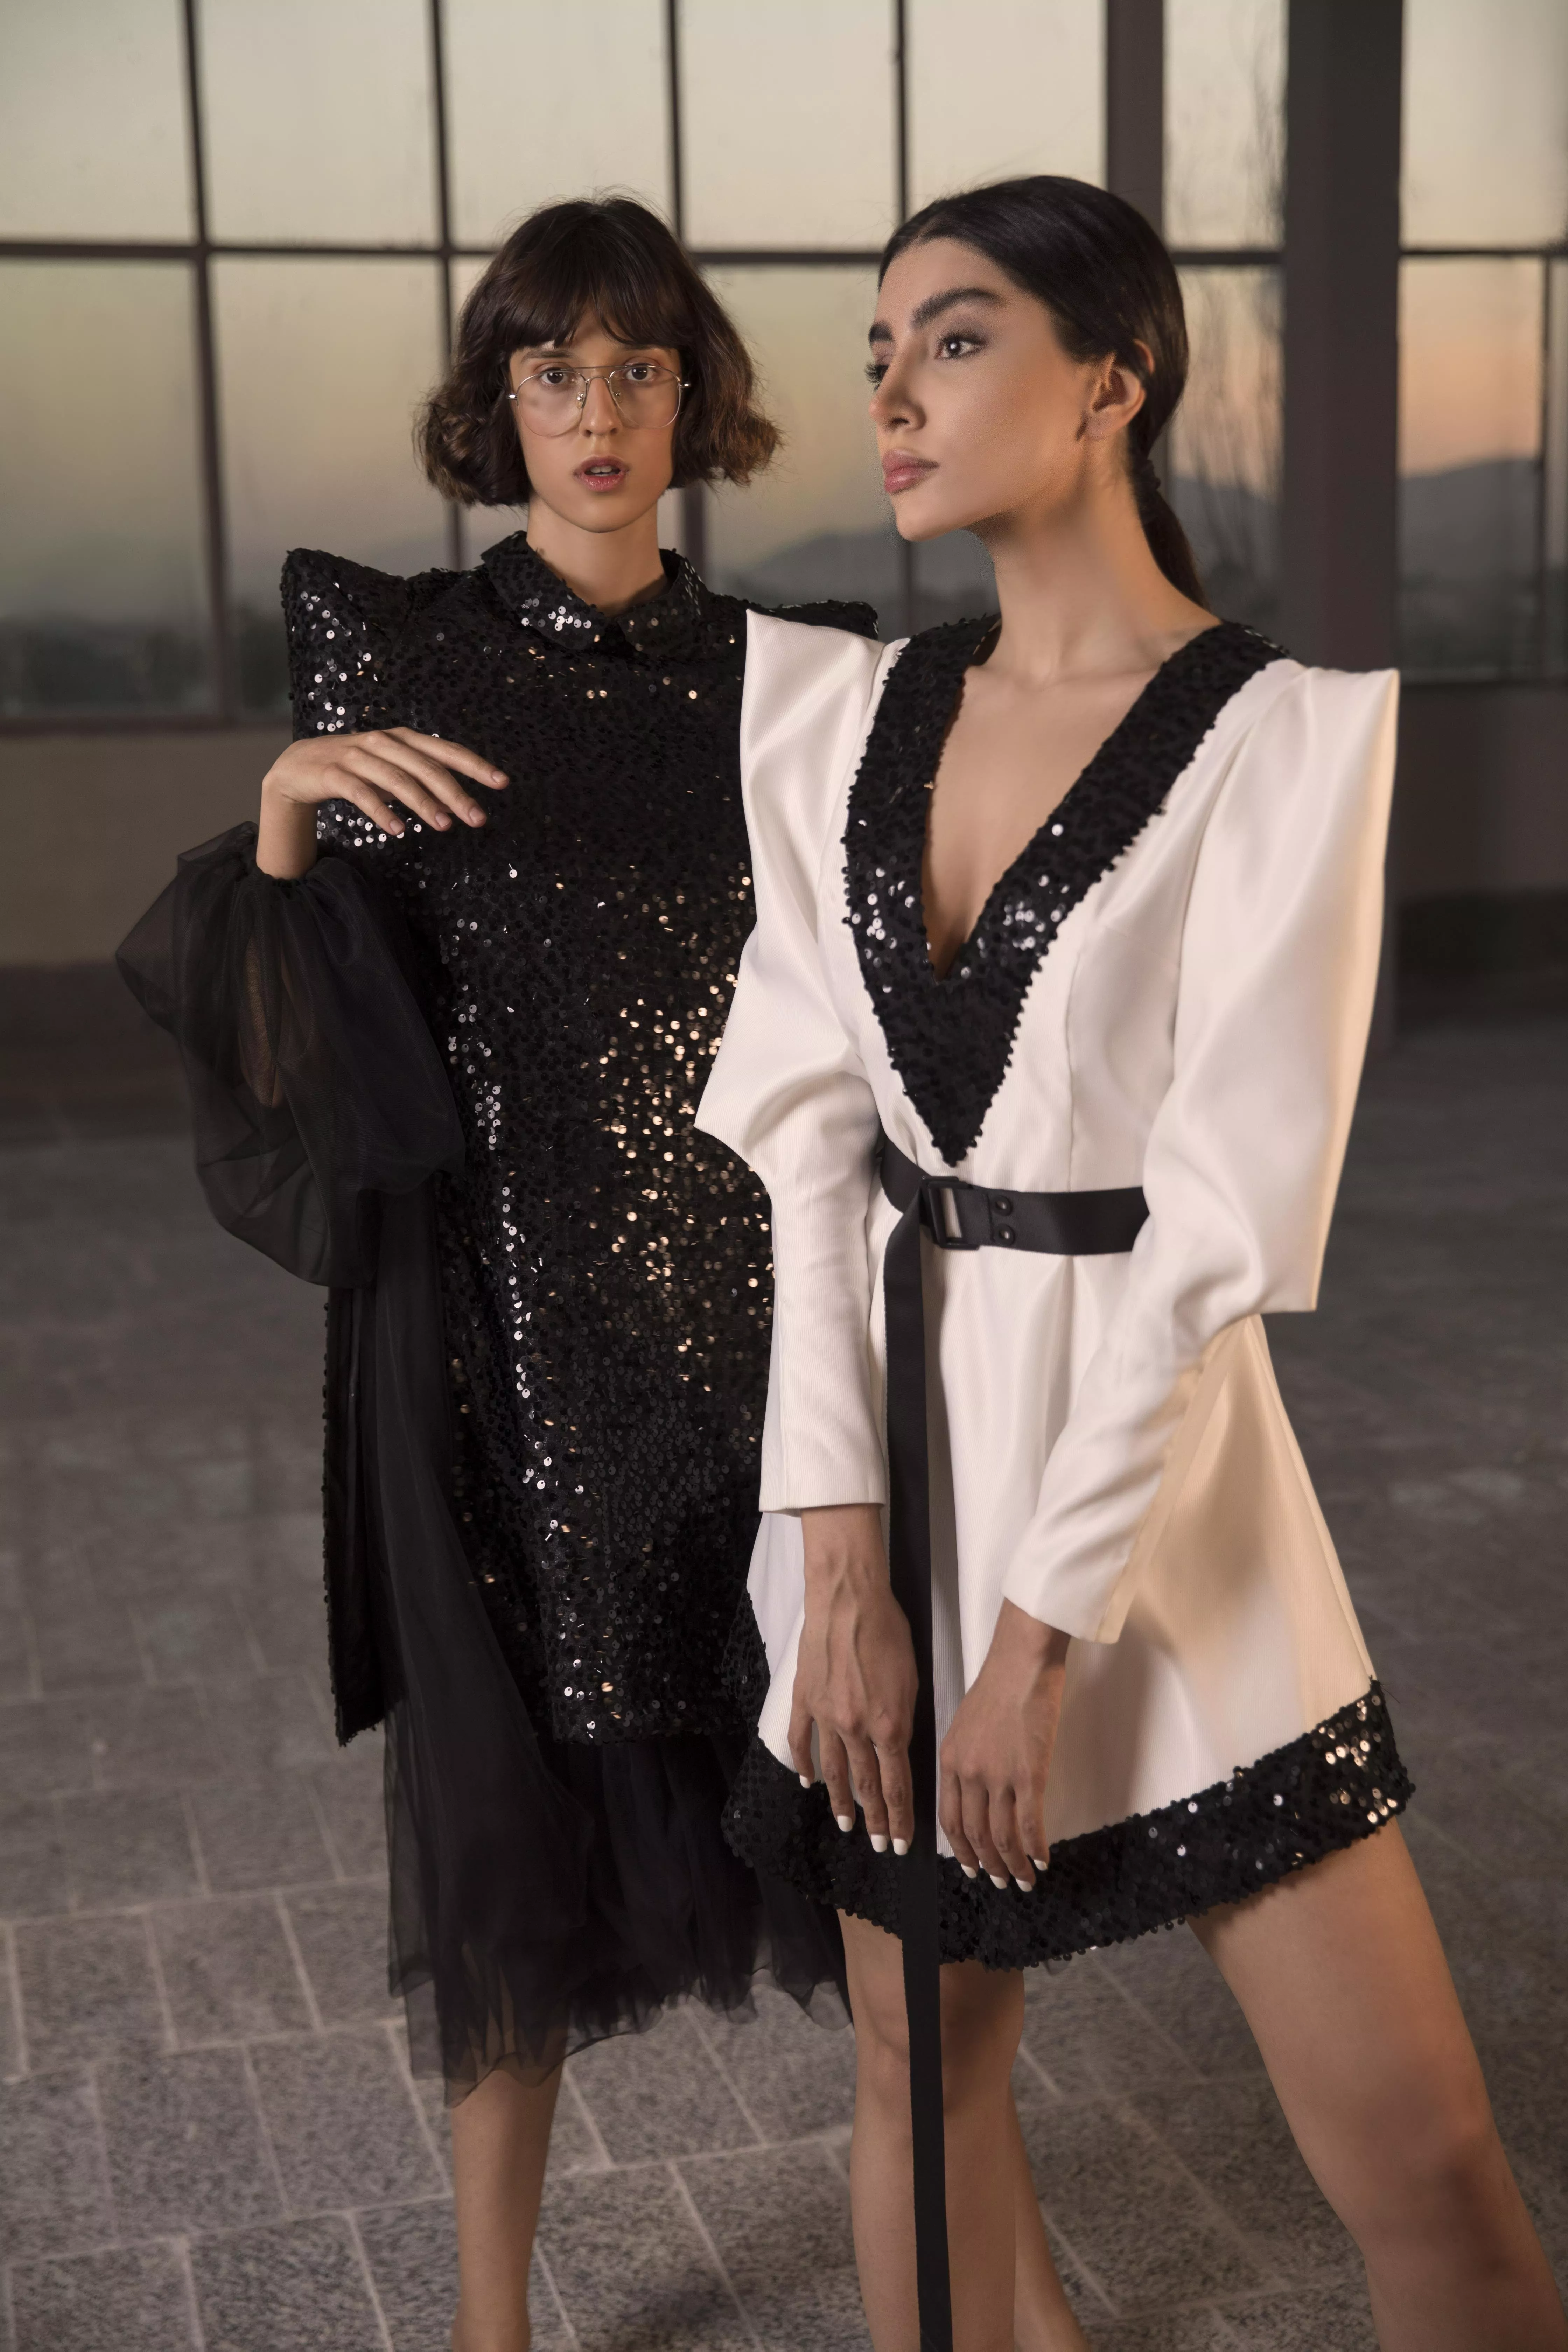 أبرز ما لفتنا في أسبوع الموضة العربي 2020 في دبي